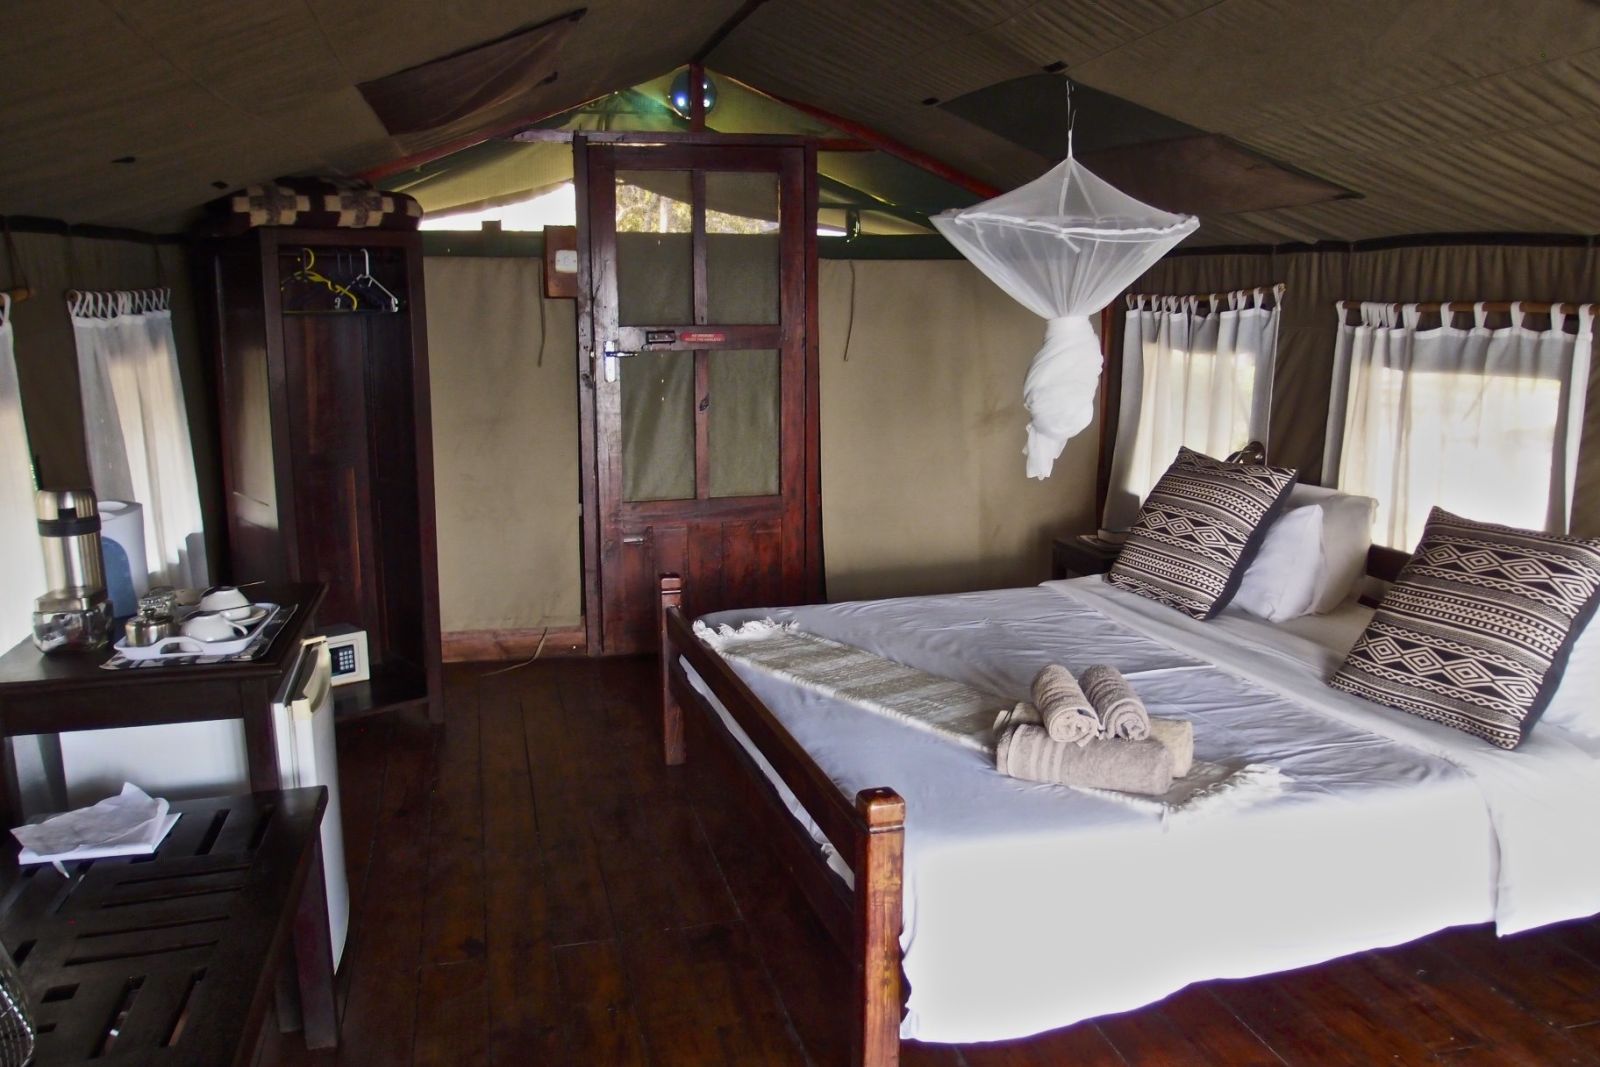 Kiambi Safari Lodge